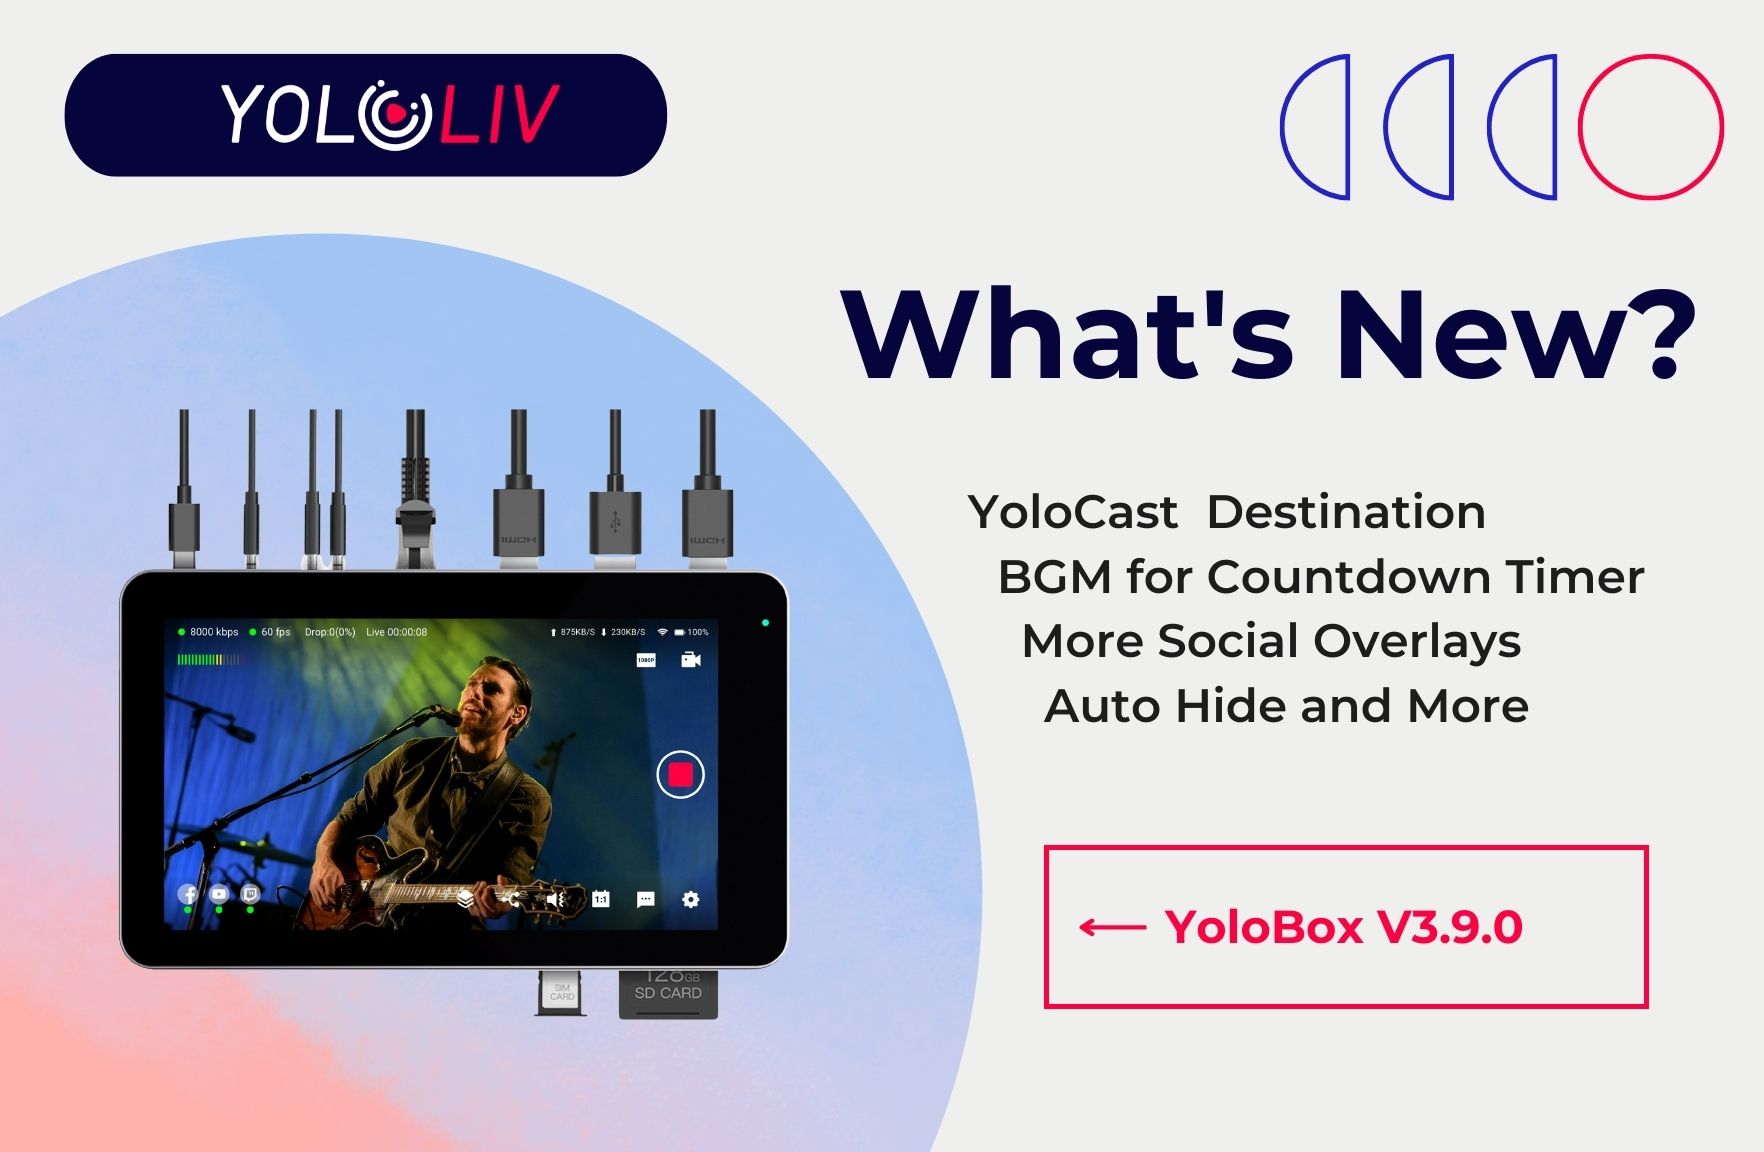 Khám phá hộp YoloBox v3.9.0 mới nhất - thiết bị livestream đa nền tảng với nhiều tính năng tuyệt vời giúp bạn dễ dàng chia sẻ trực tuyến chất lượng cao từ mọi thiết bị của mình. Hãy xem ngay hình ảnh liên quan đến sản phẩm này để biết thêm chi tiết.